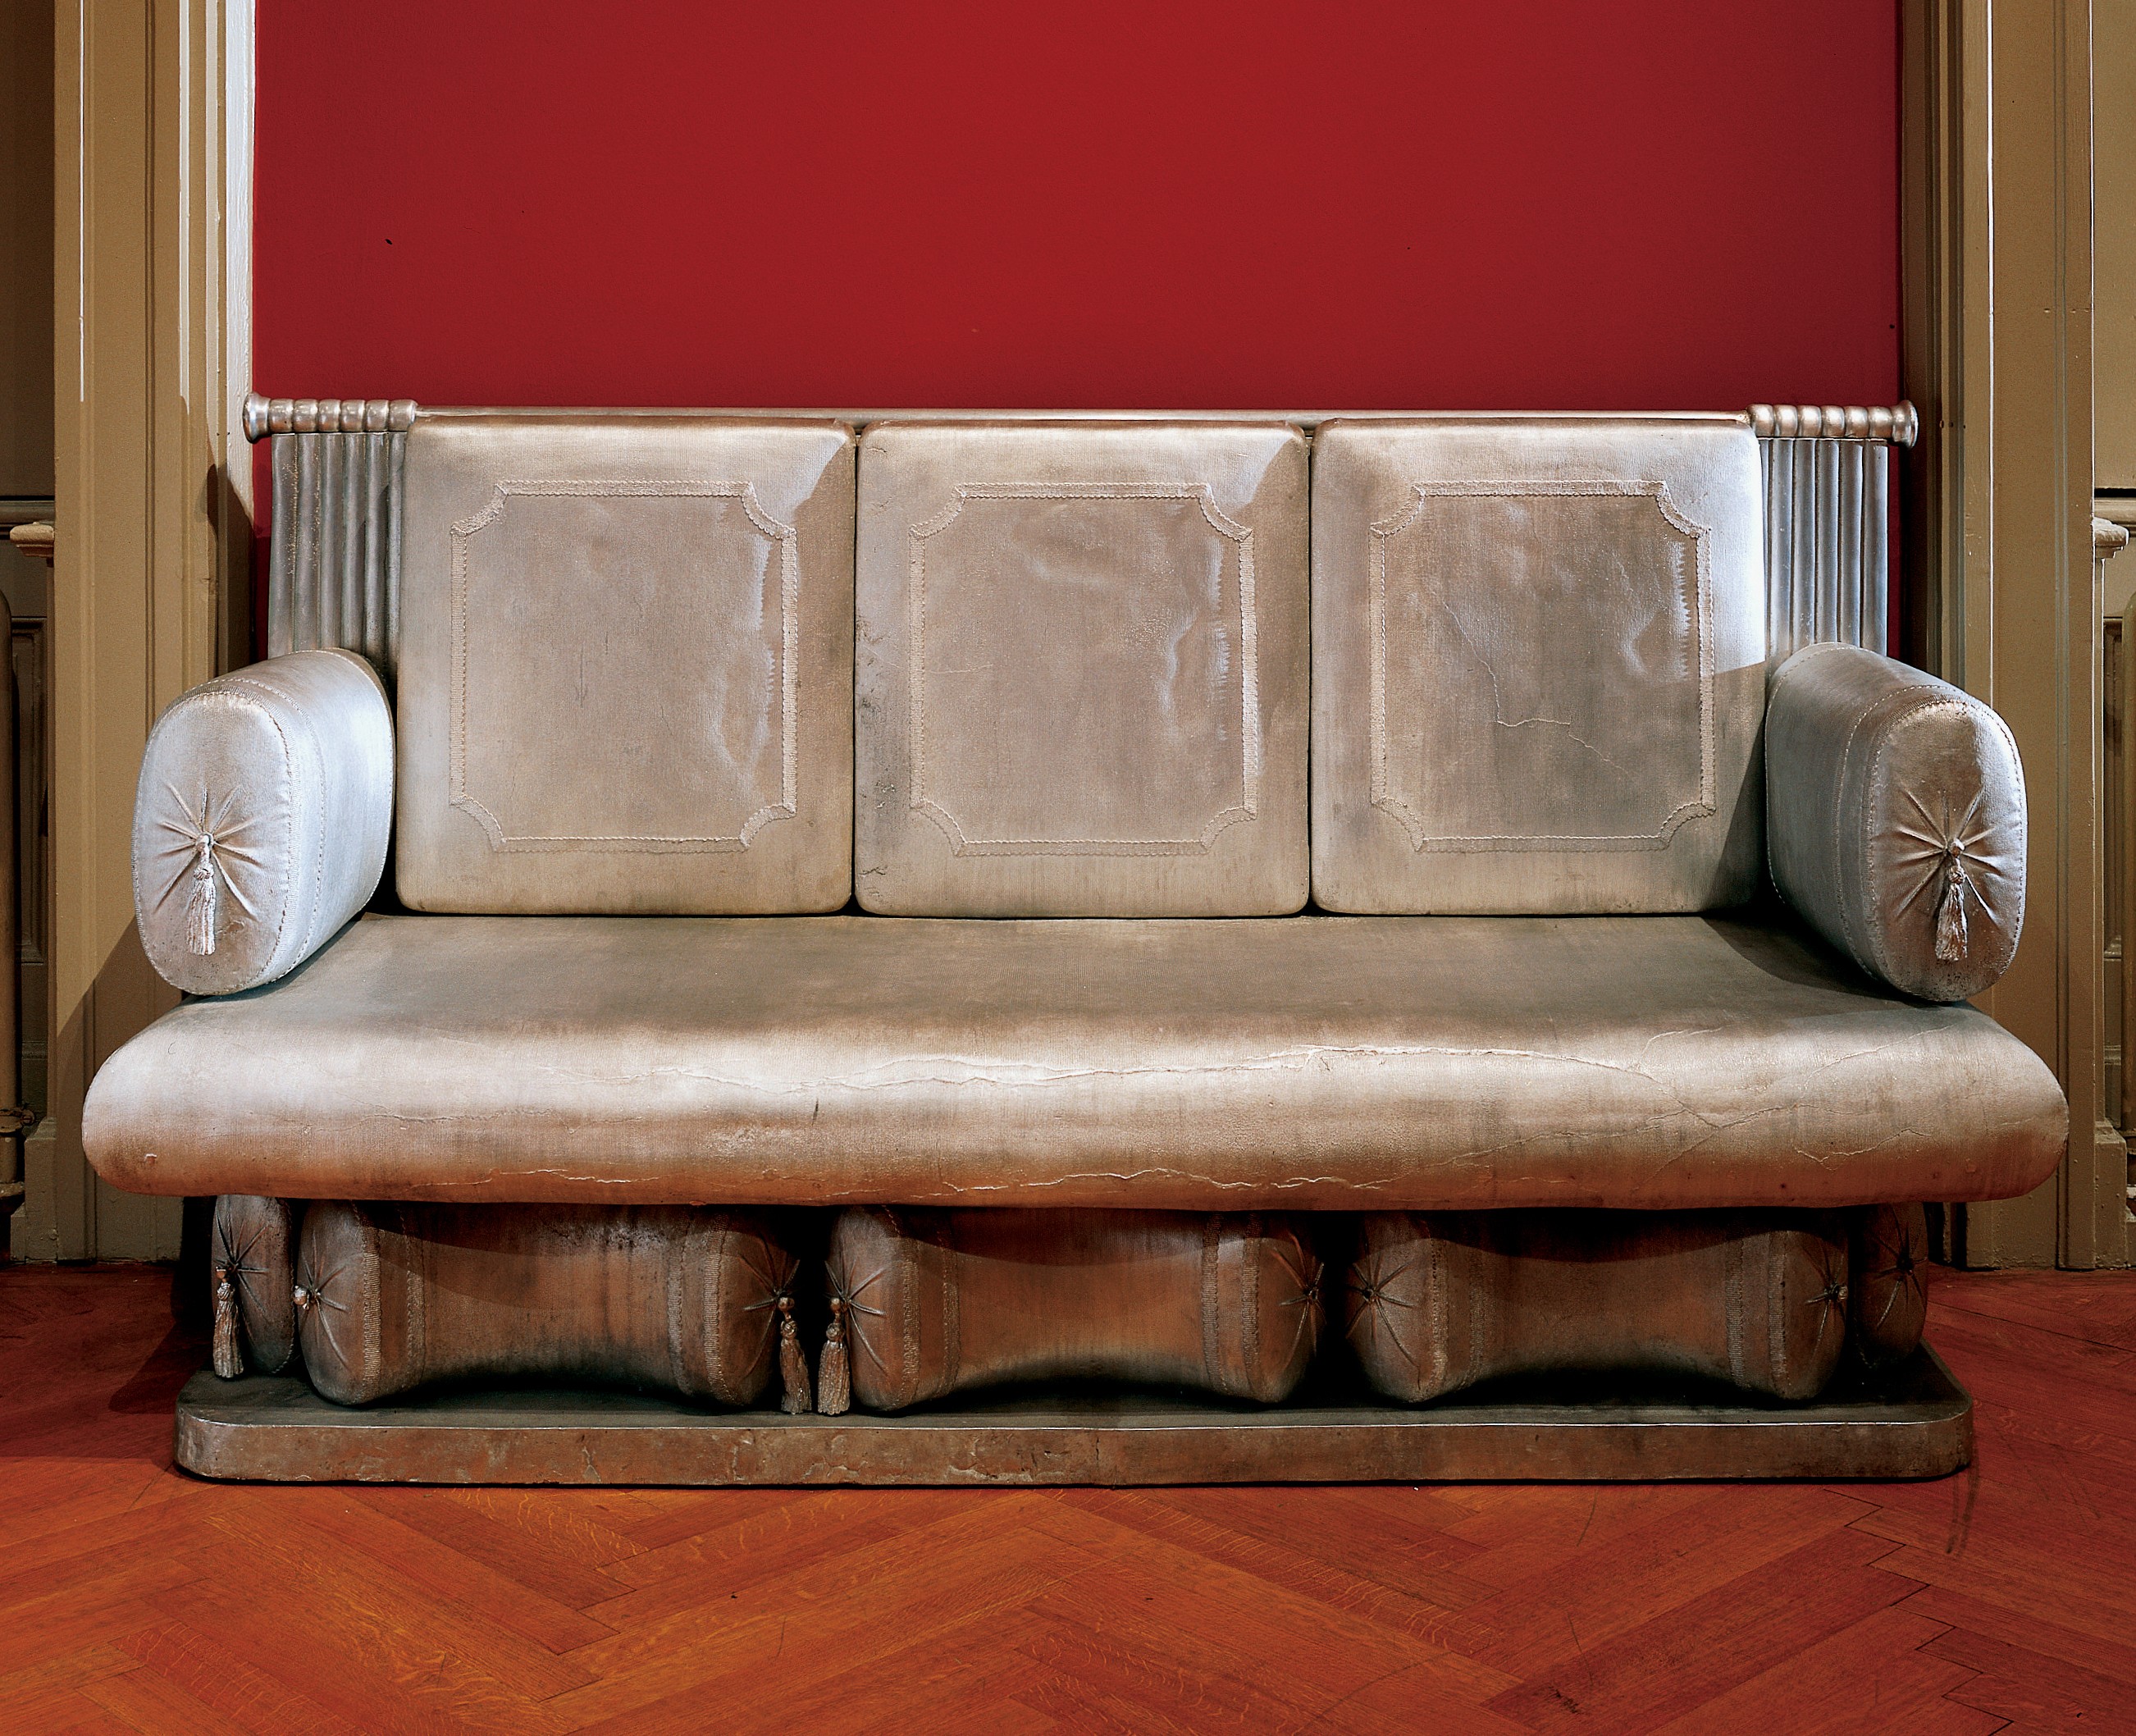 <BODY>Jenny Holzer, Sofa für Besucher, 1993, Objekt nach einem Original von Josef Danhauser, GK 99 / 1993 © MAK</BODY>